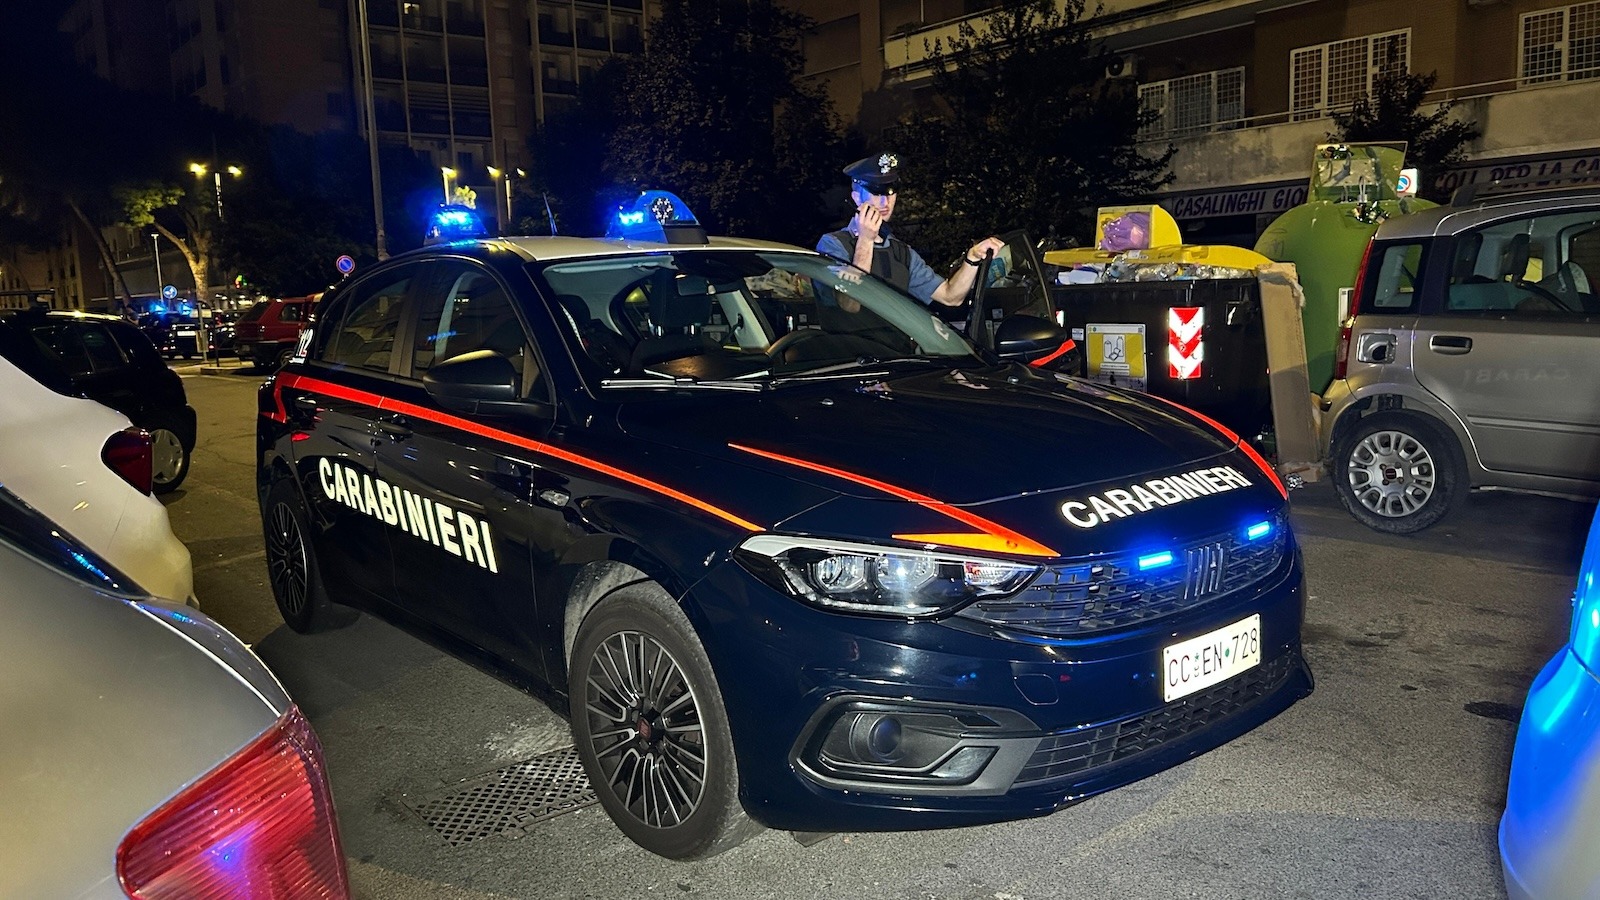 Carabinieri notte